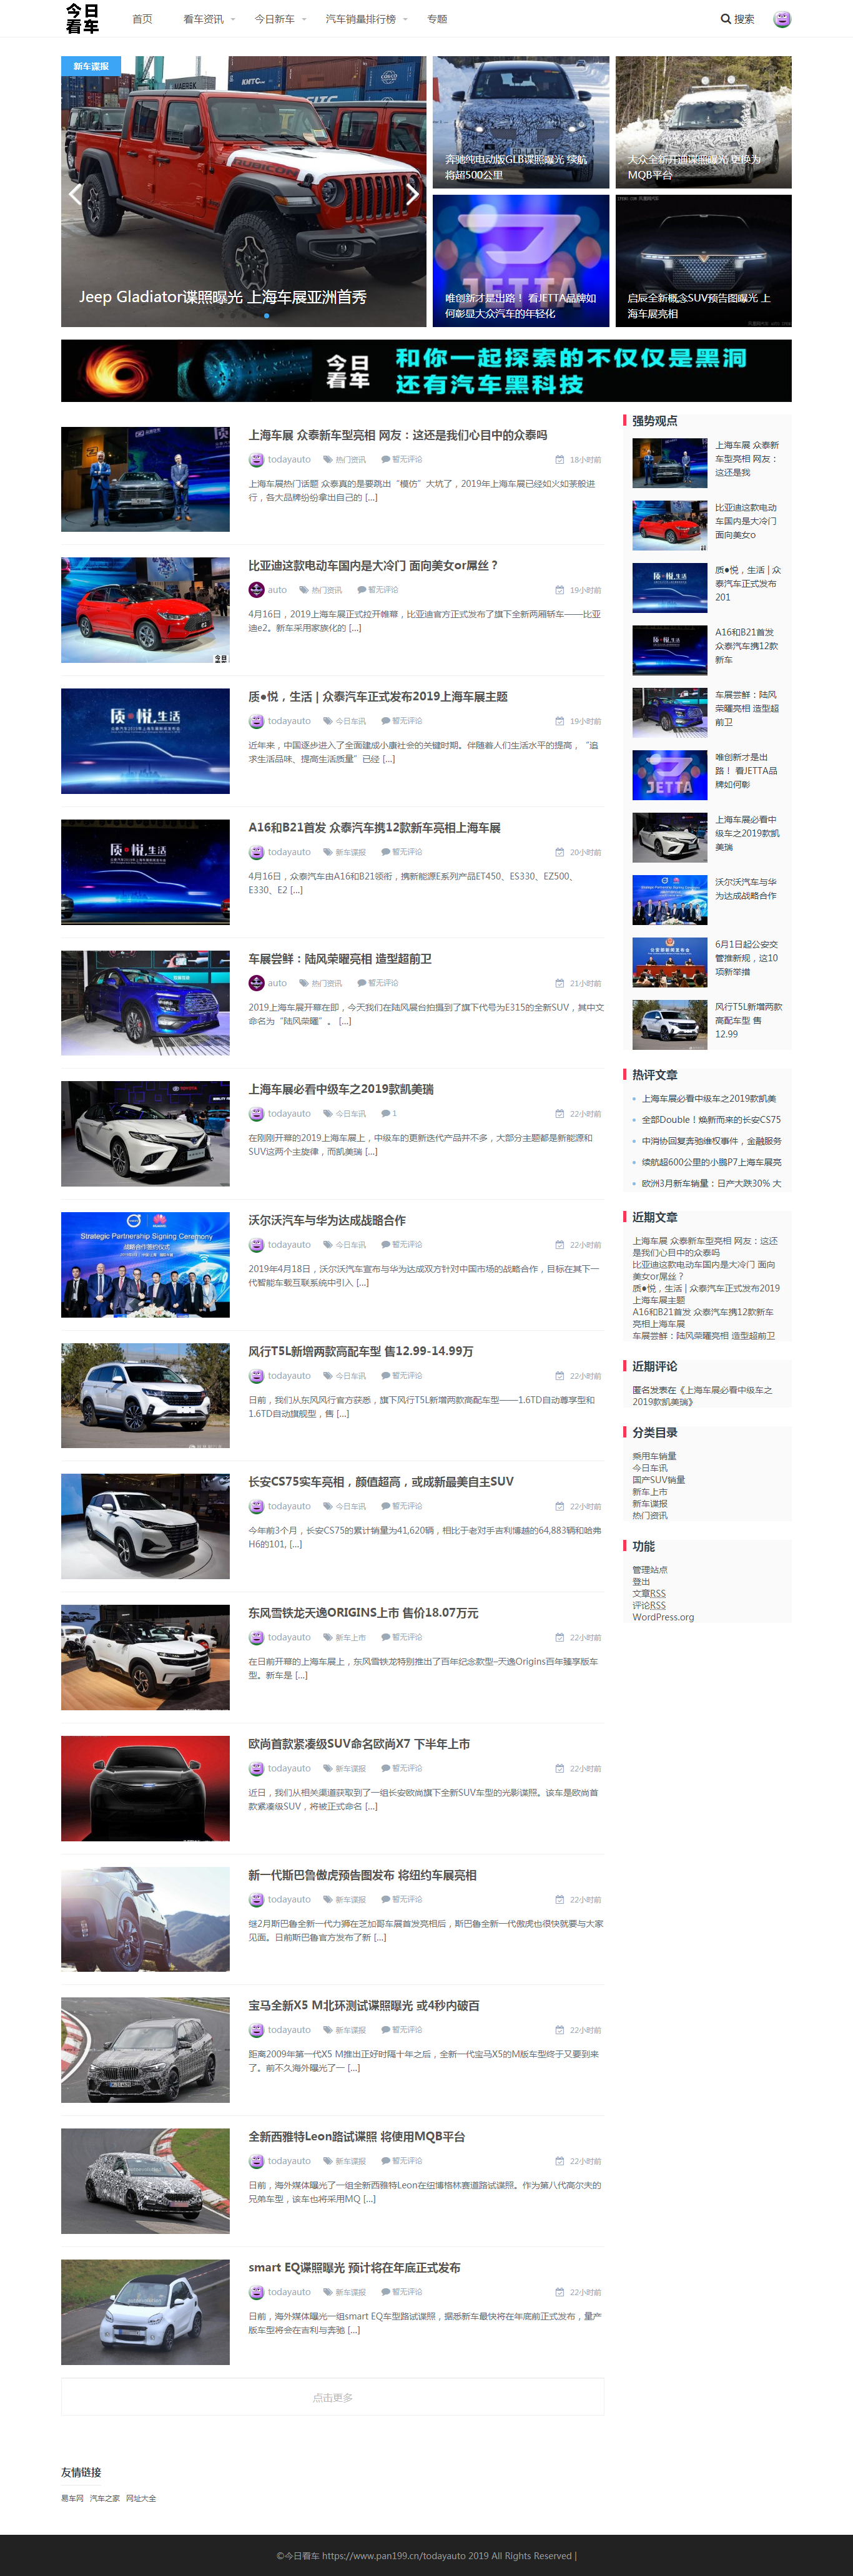 今日看车：使用WordPress搭建的今日看车汽车资讯网站调试上线